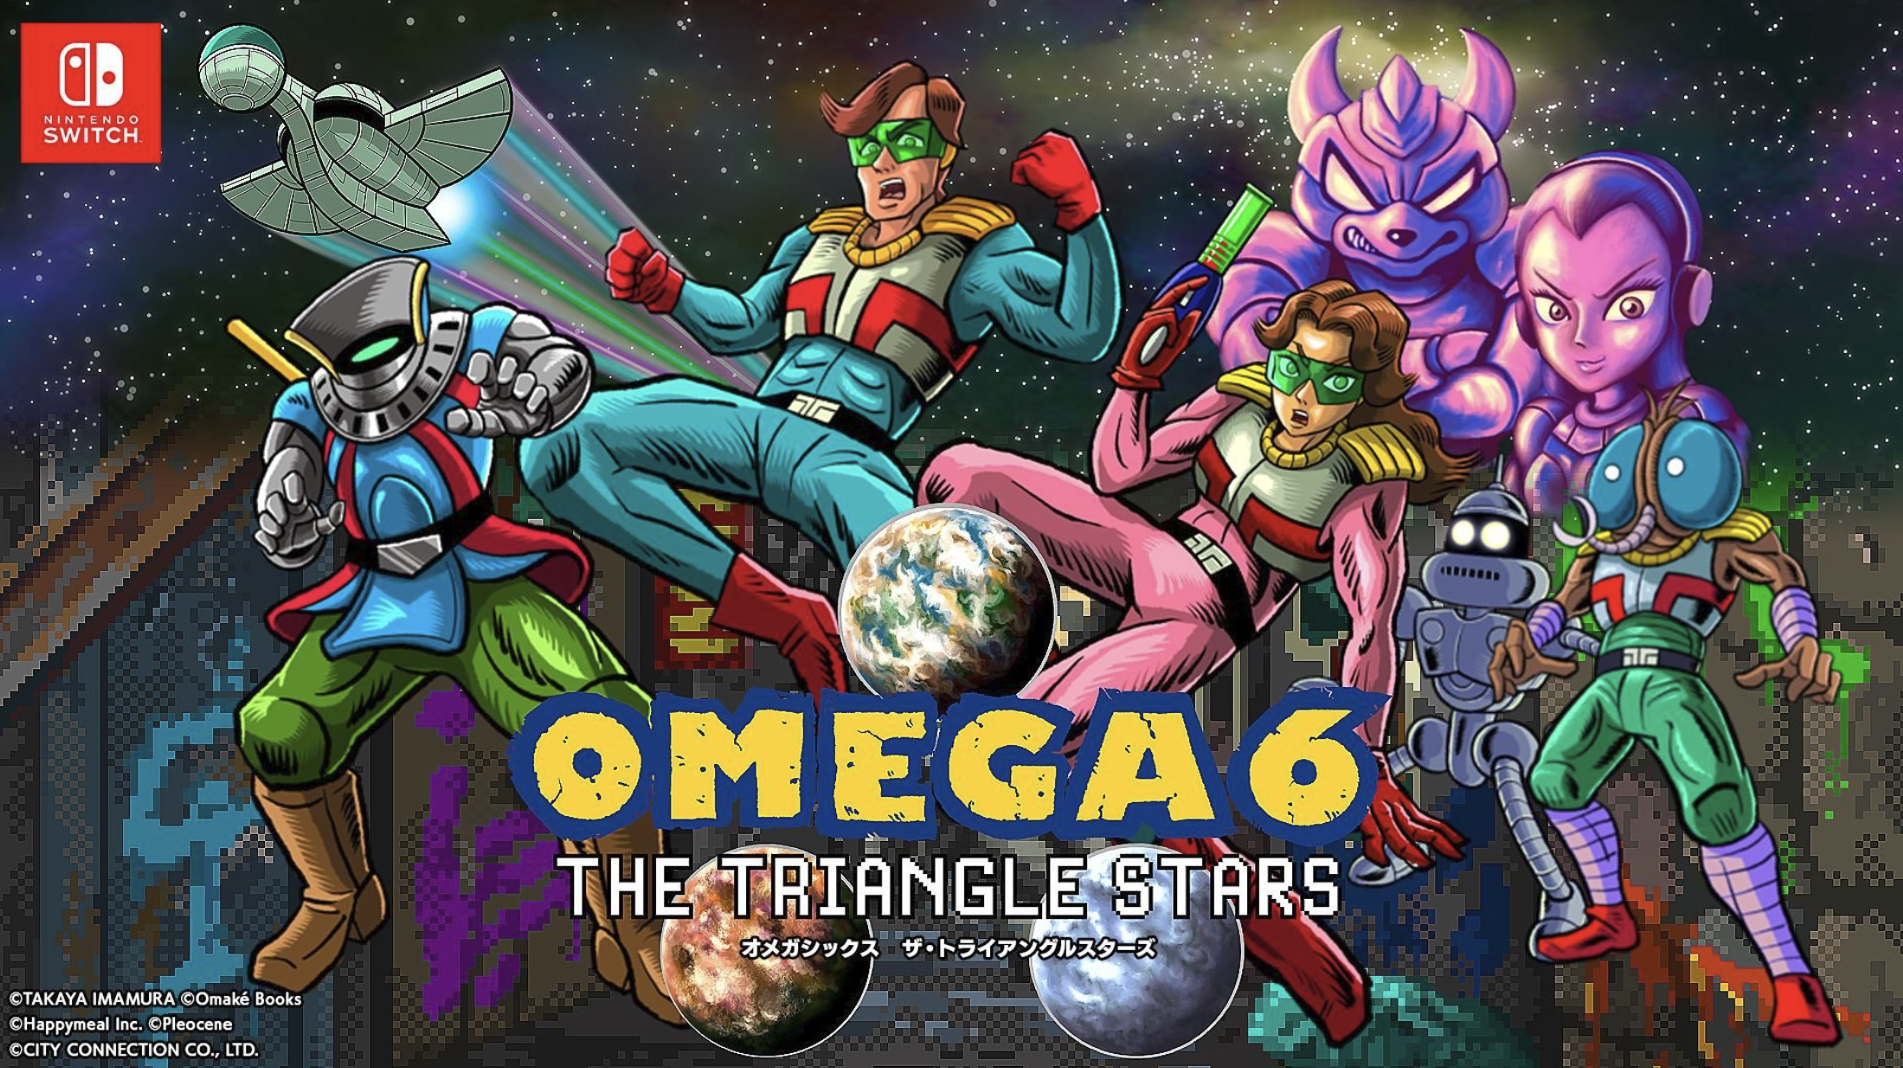 Omega 6: The Triangle Stars